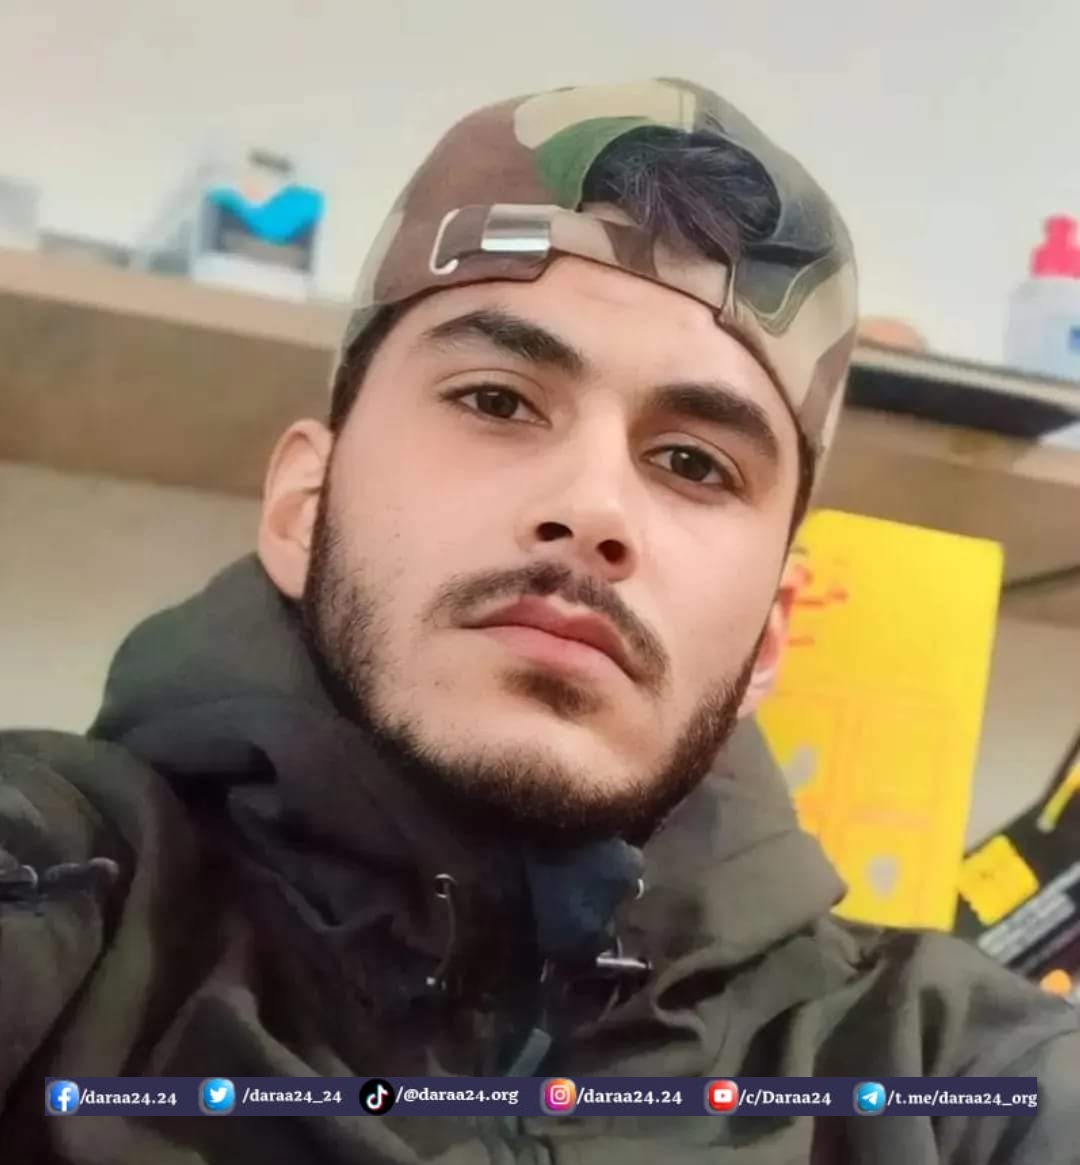 الشاب "محمد عليان الحريري" من بلدة بصر الحرير في الريف الشرقي من محافظة درعا، الذي لقي حتفه بقصف إسرائيلي في لبنان.